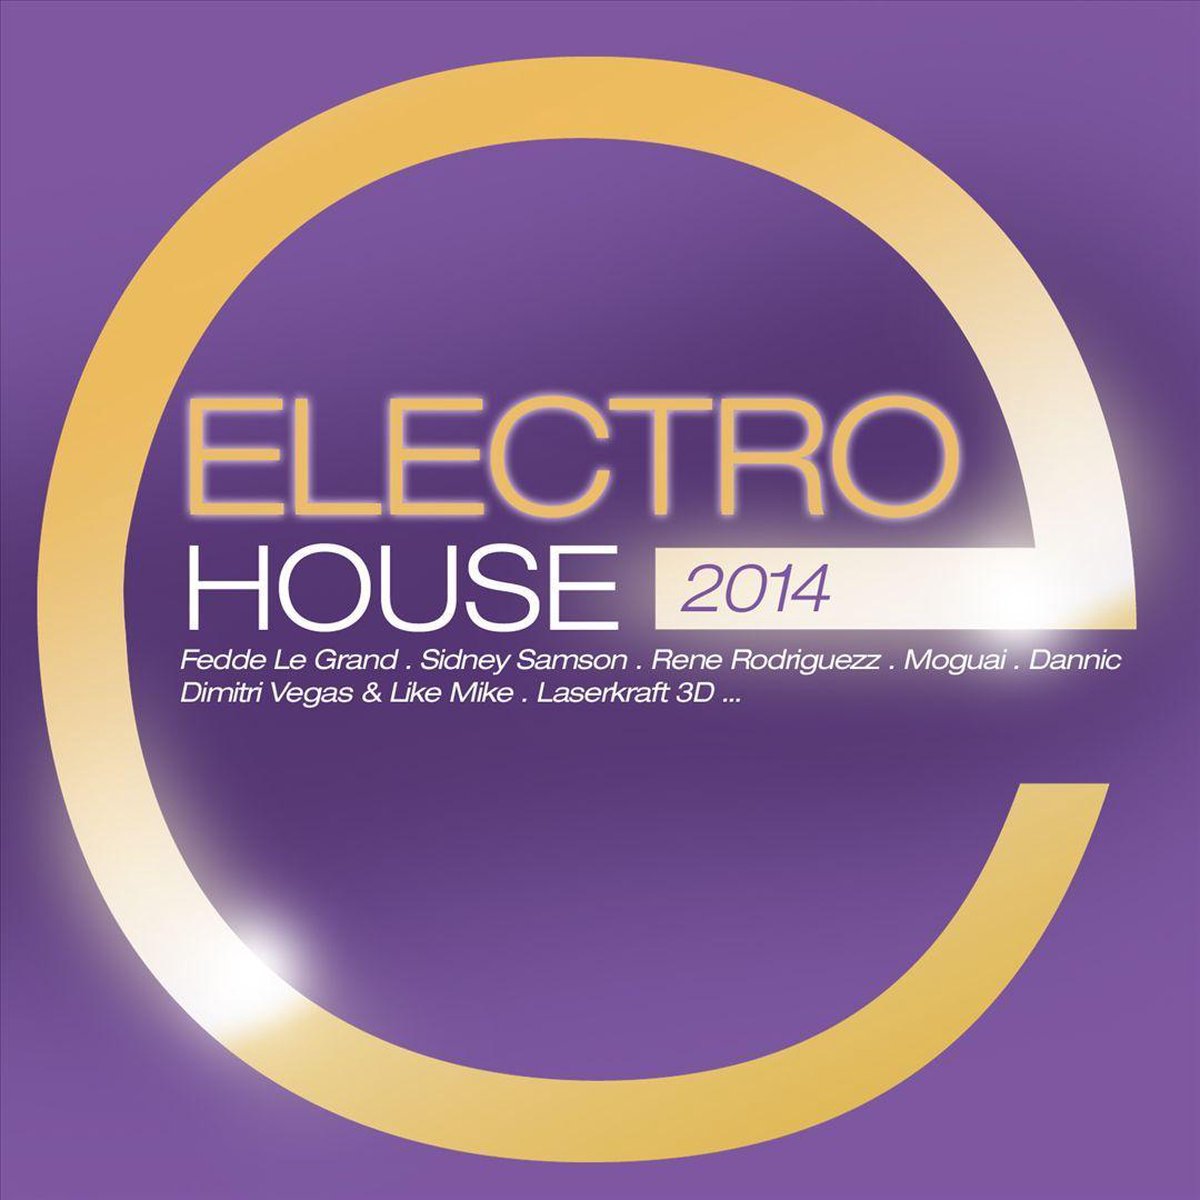 Electro House 2014 - V/a